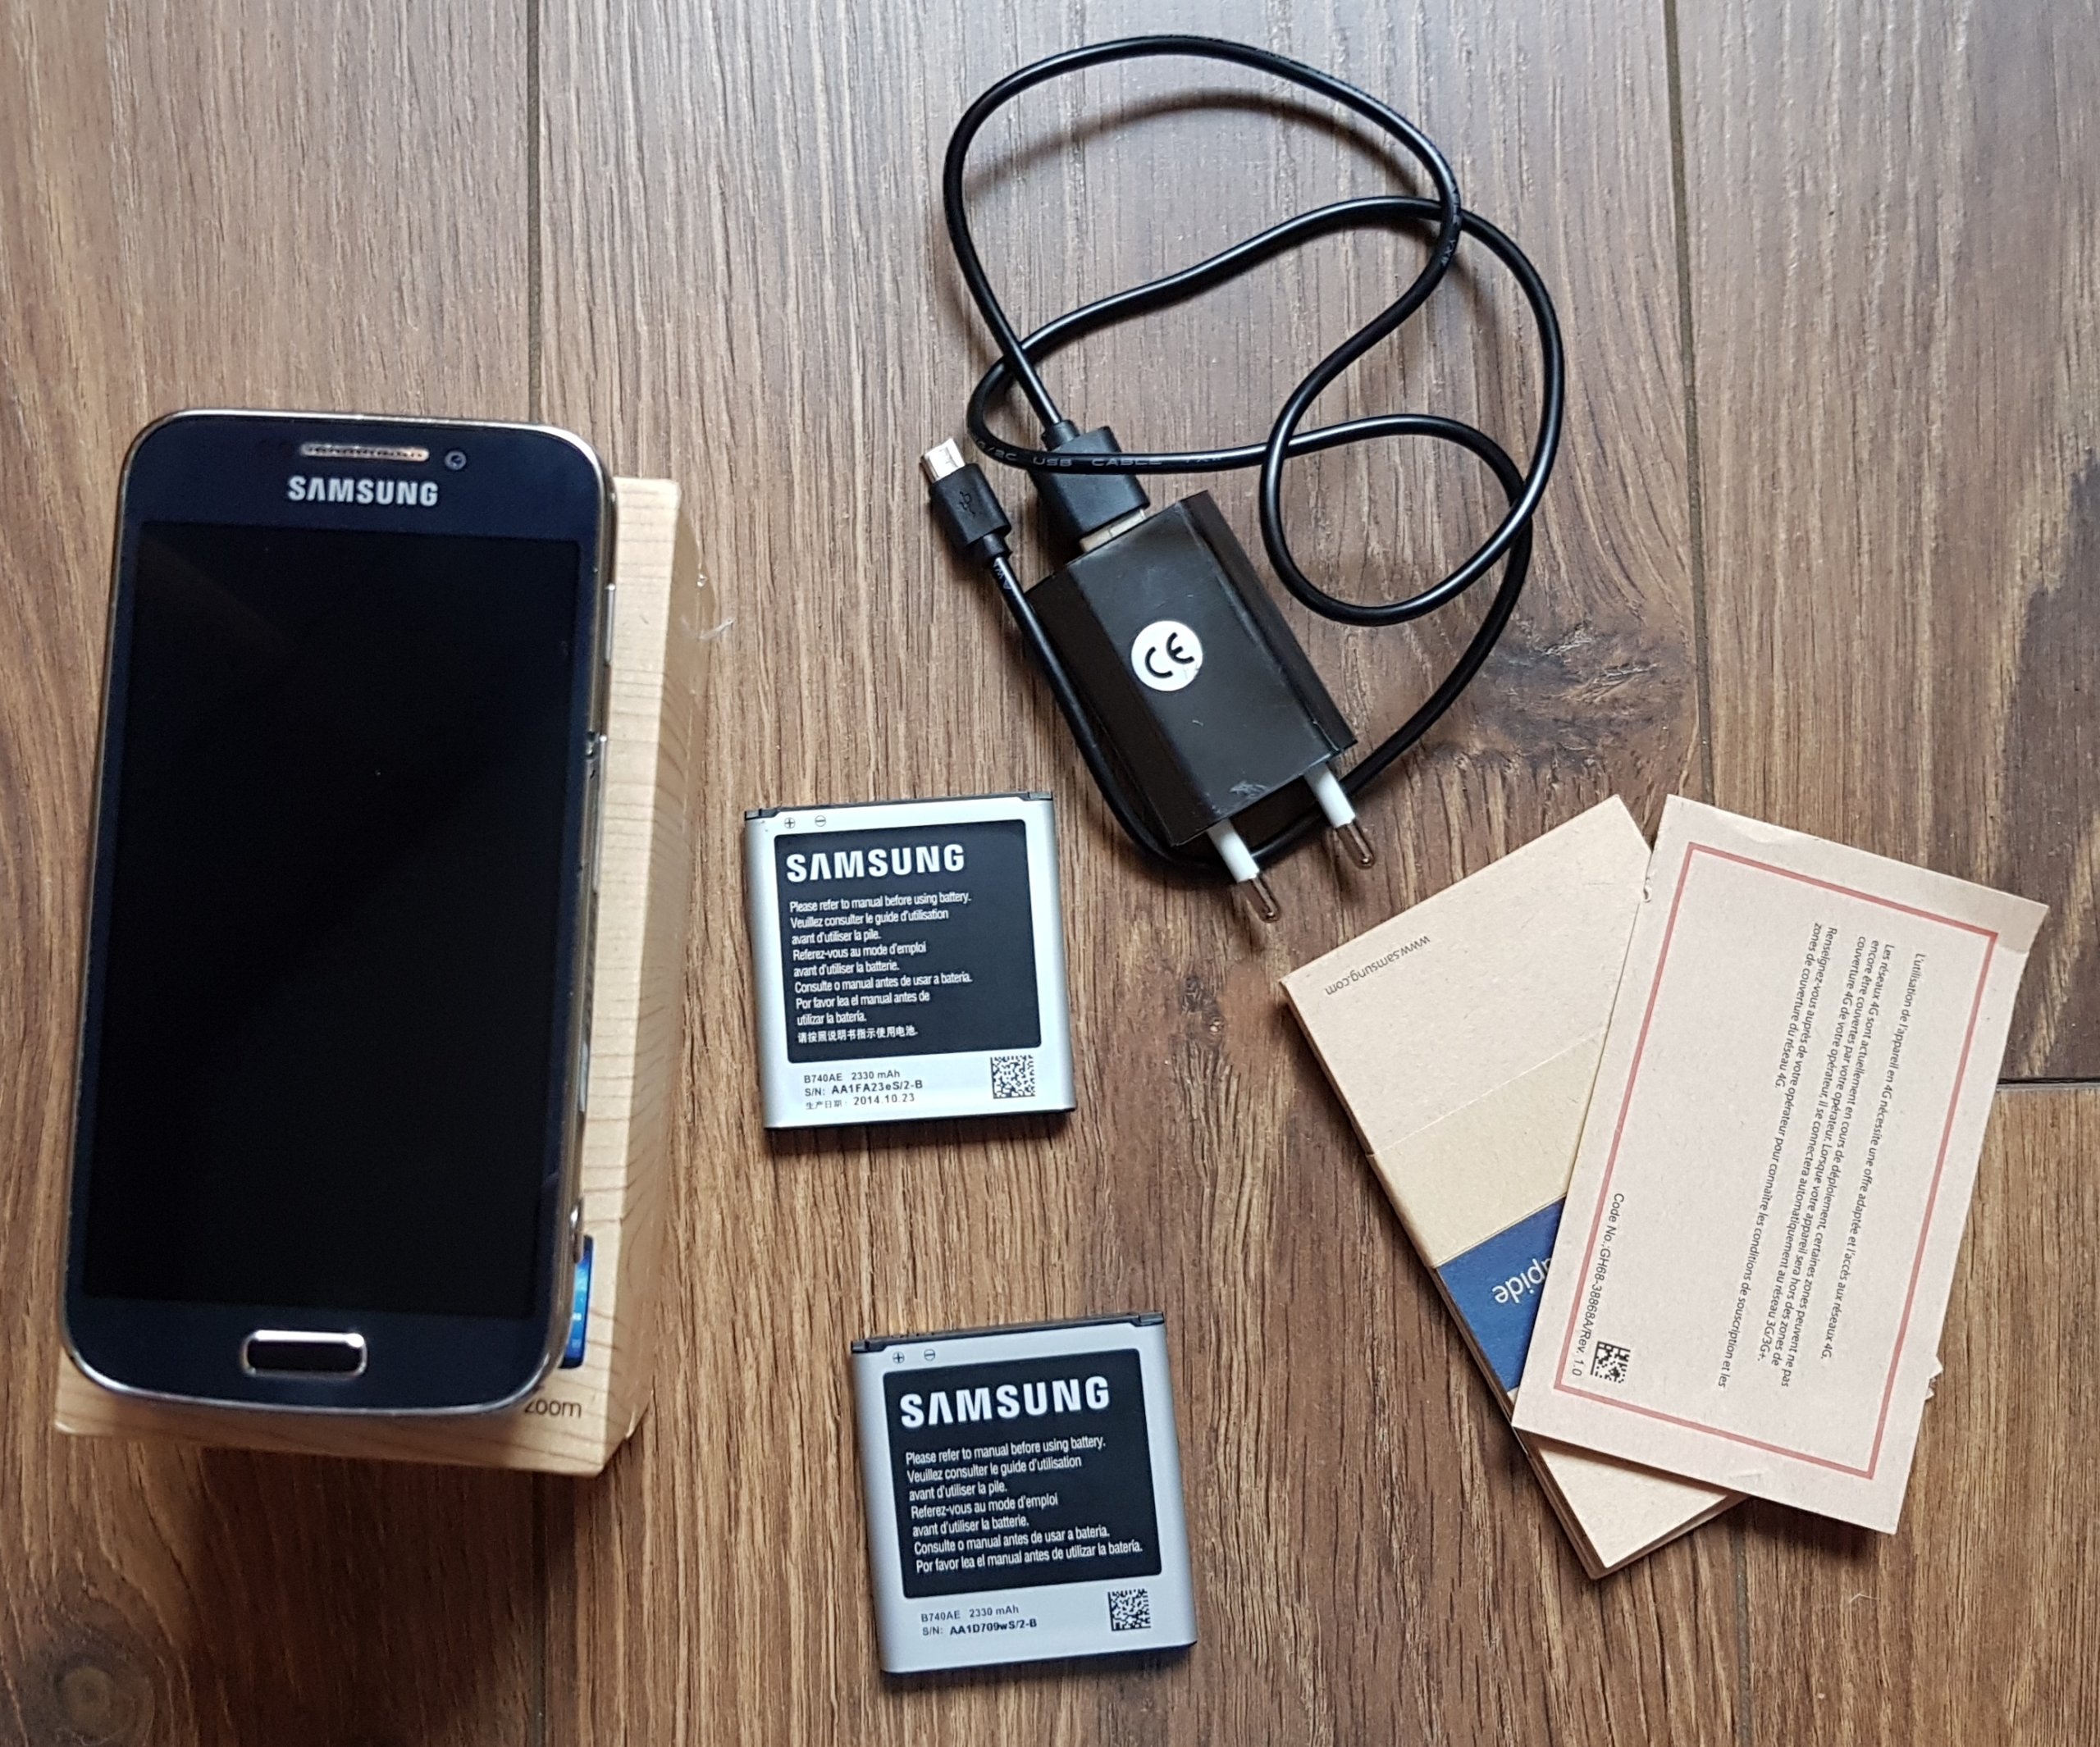 Samsung Galaxy S4 Zoom Komplet 7070795963 Oficjalne Archiwum Allegro